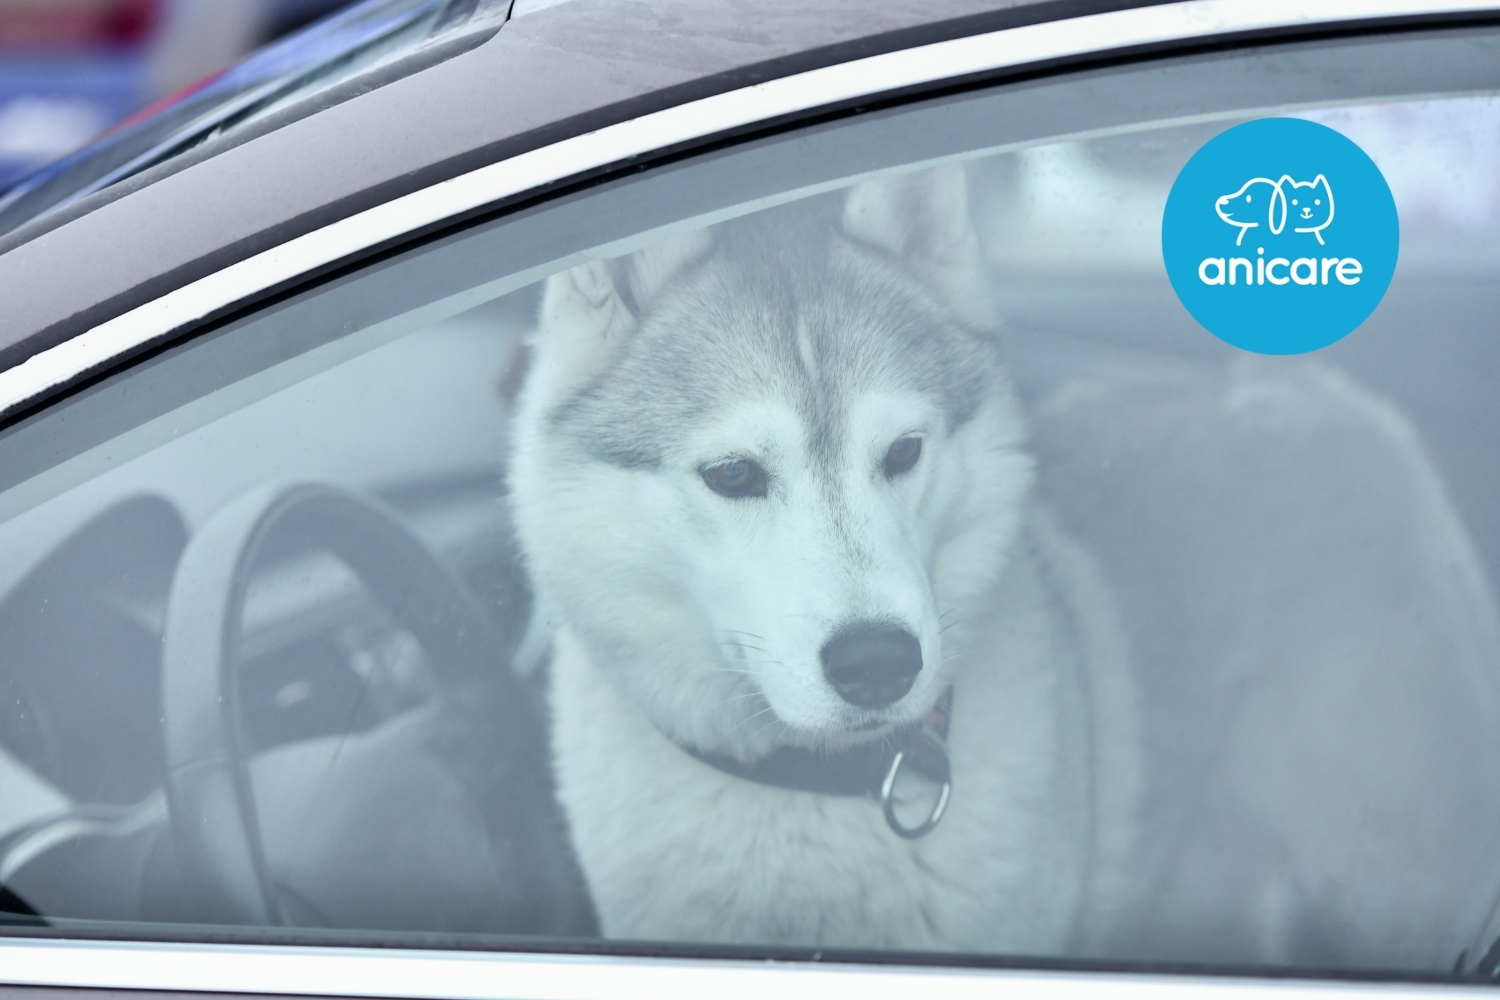 Hilfe! Fremder Hund im heißen Auto – Was tun?